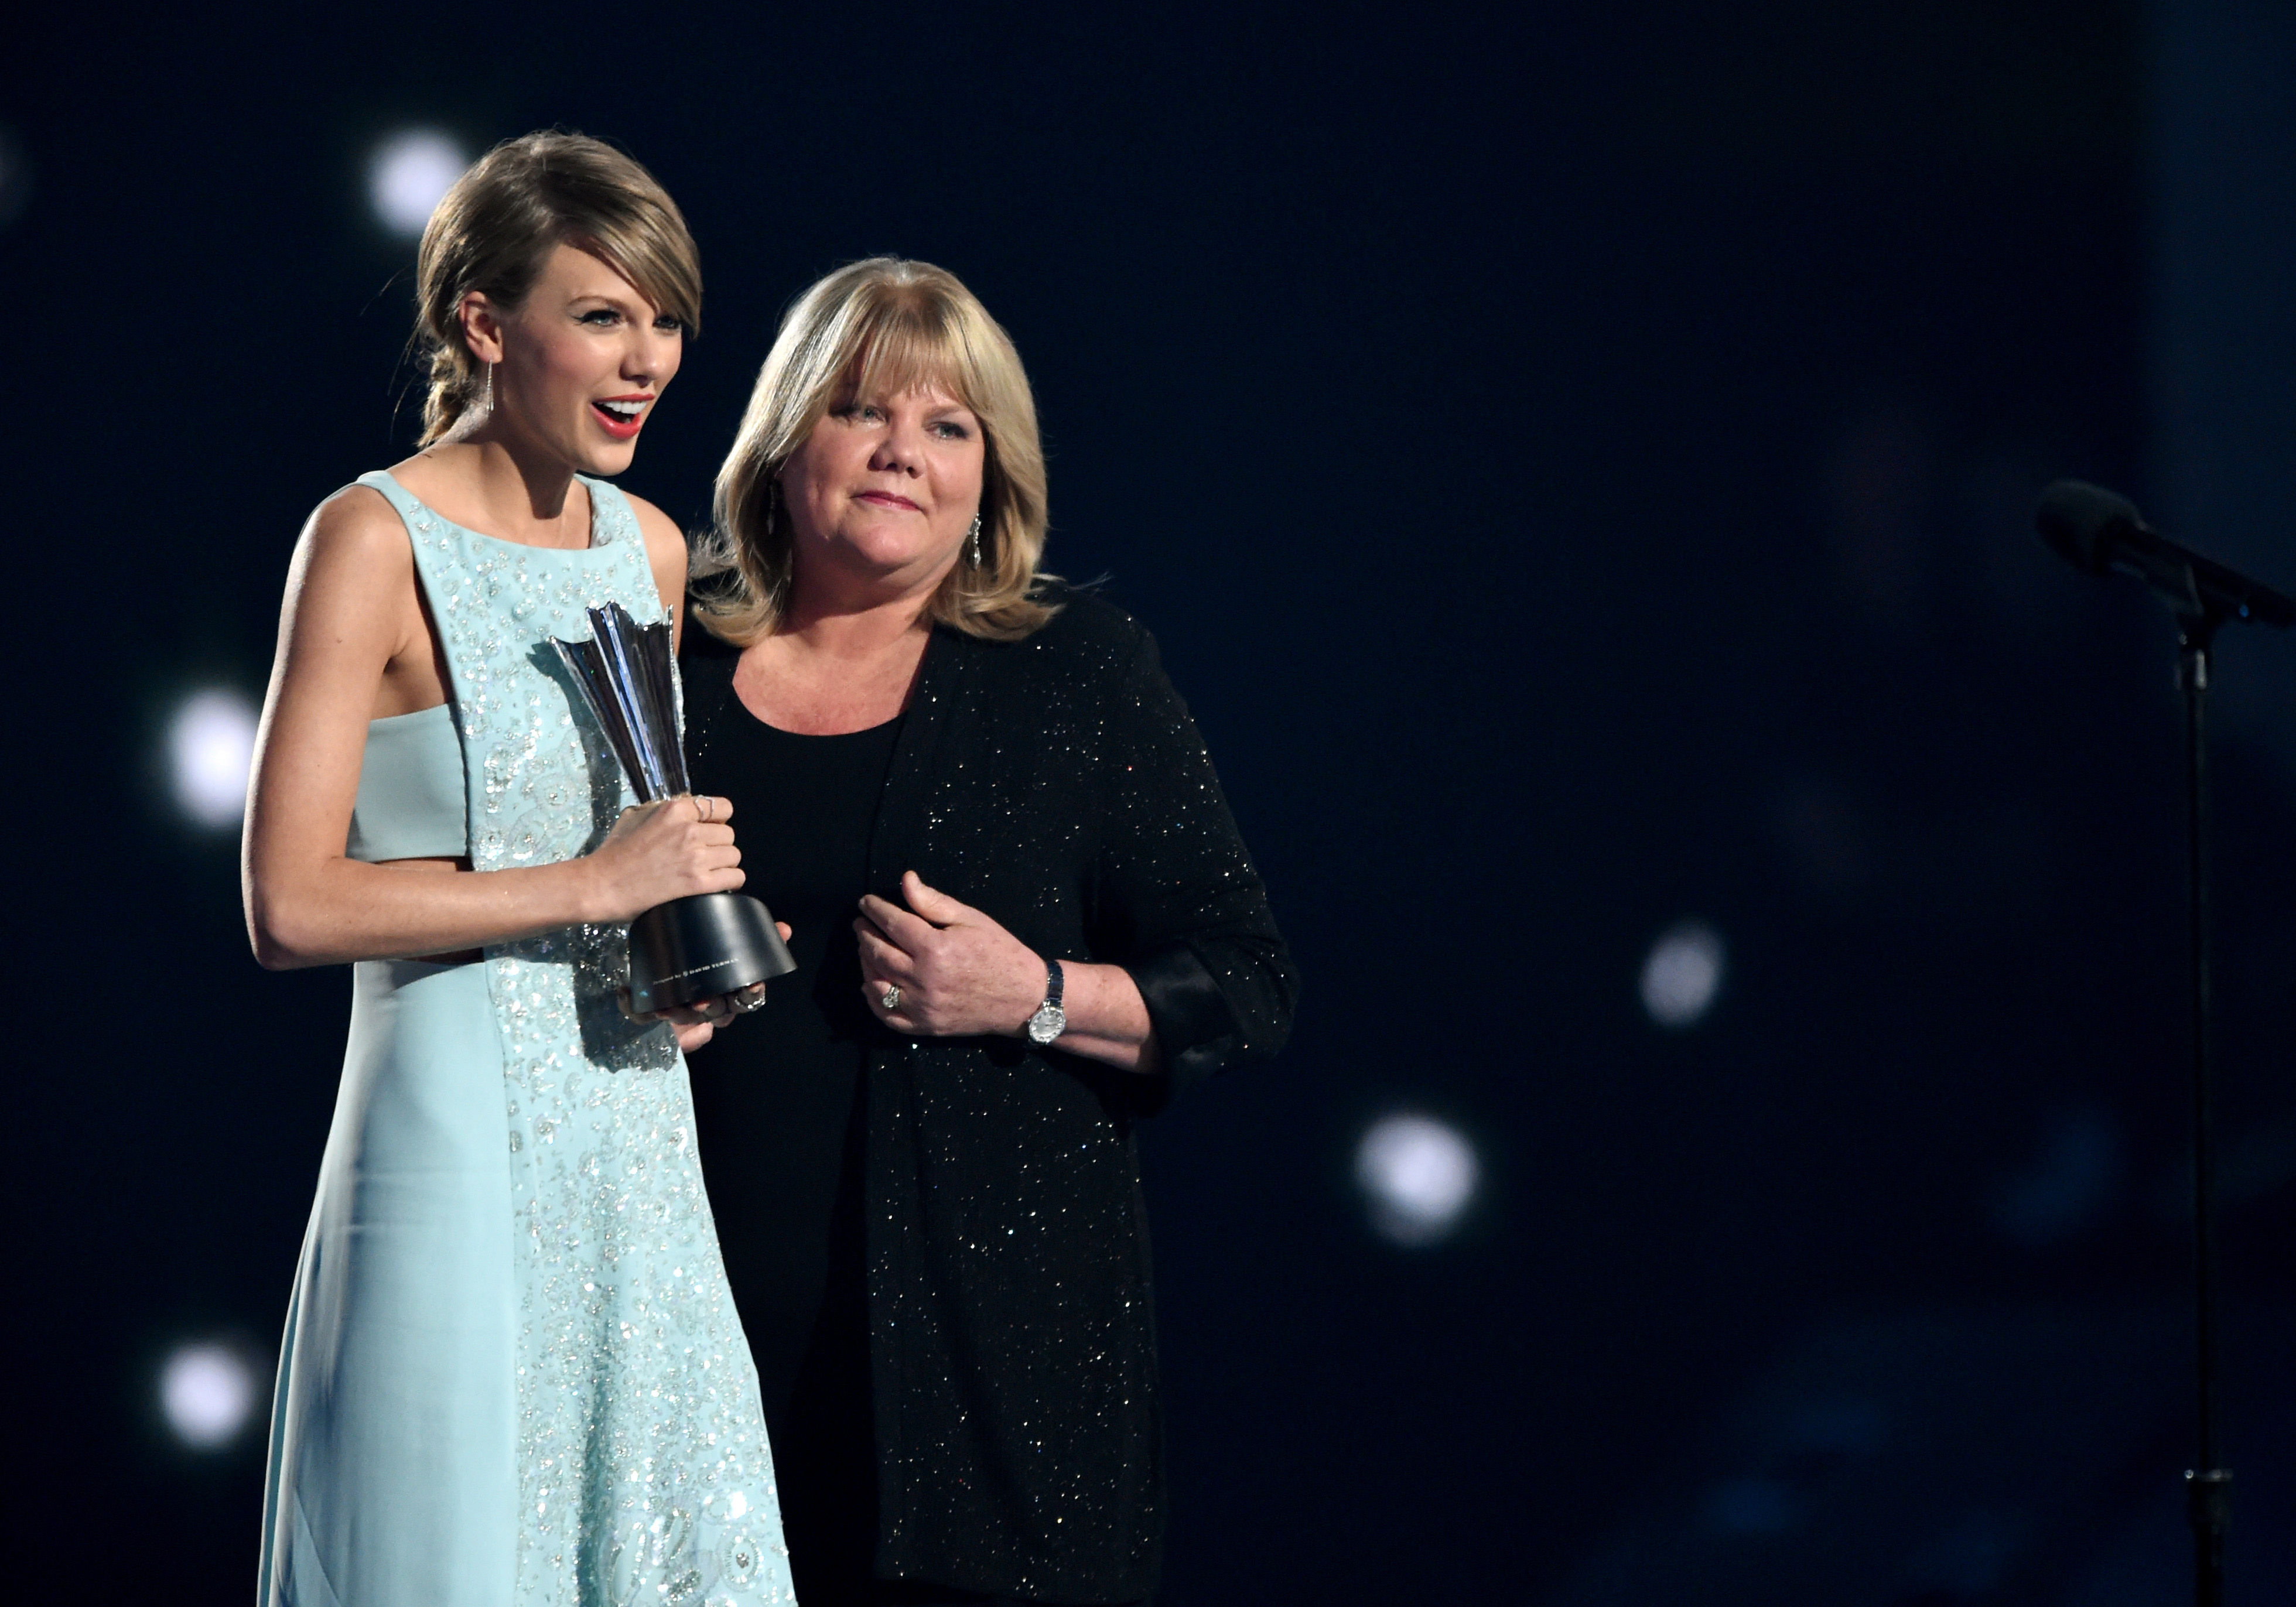 Taylor Swift acepta el Milestone Award de manos de Andrea Swift en el escenario durante la 50ª edición de los Academy Of Country Music Awards en Arlington, Texas, el 19 de abril de 2015 | Fuente: Getty Images